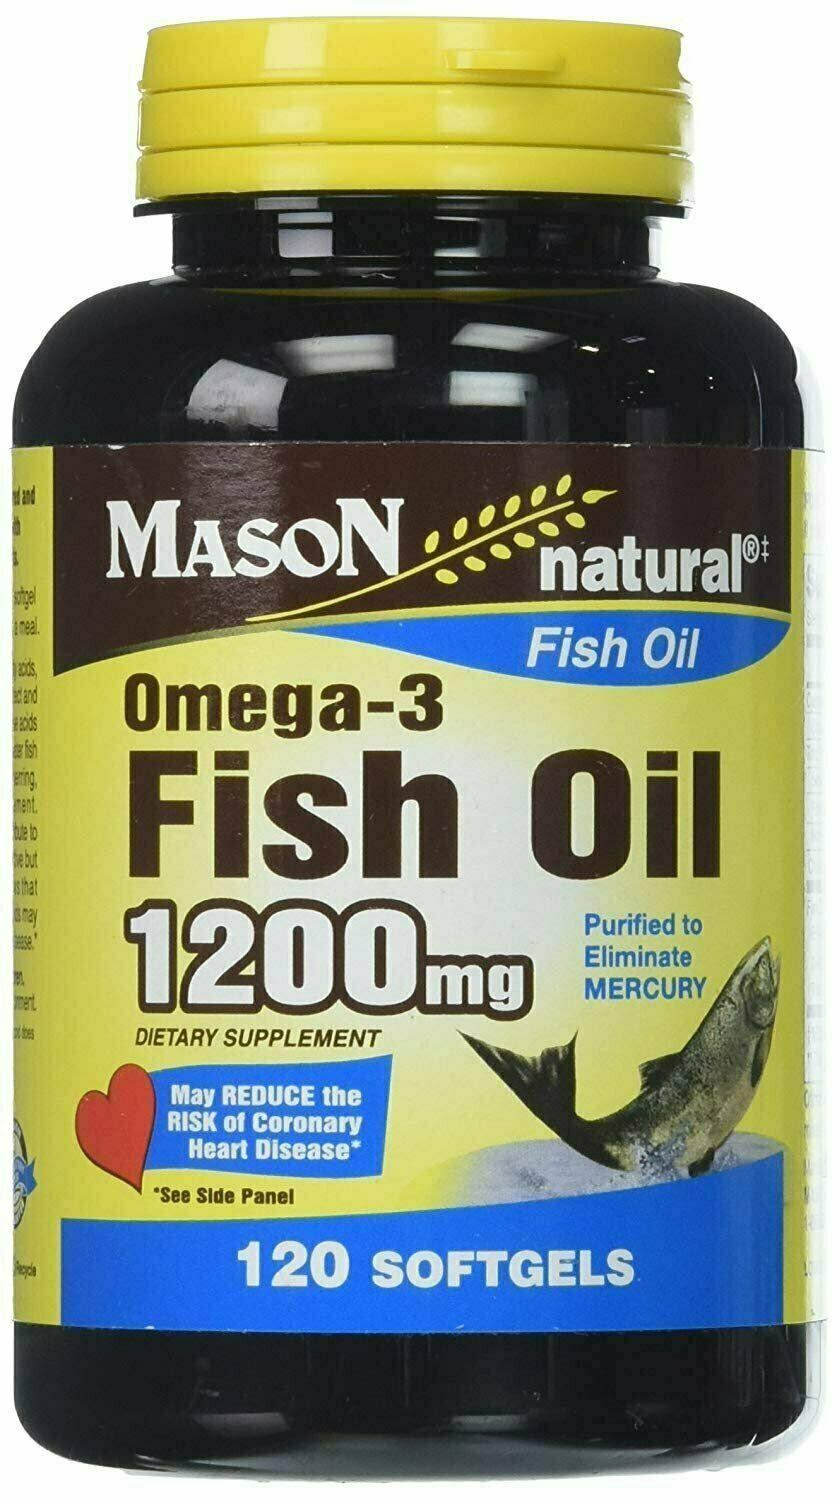 Mason Natural Omega-3 Fish Oil 1200mg Softgels - x120